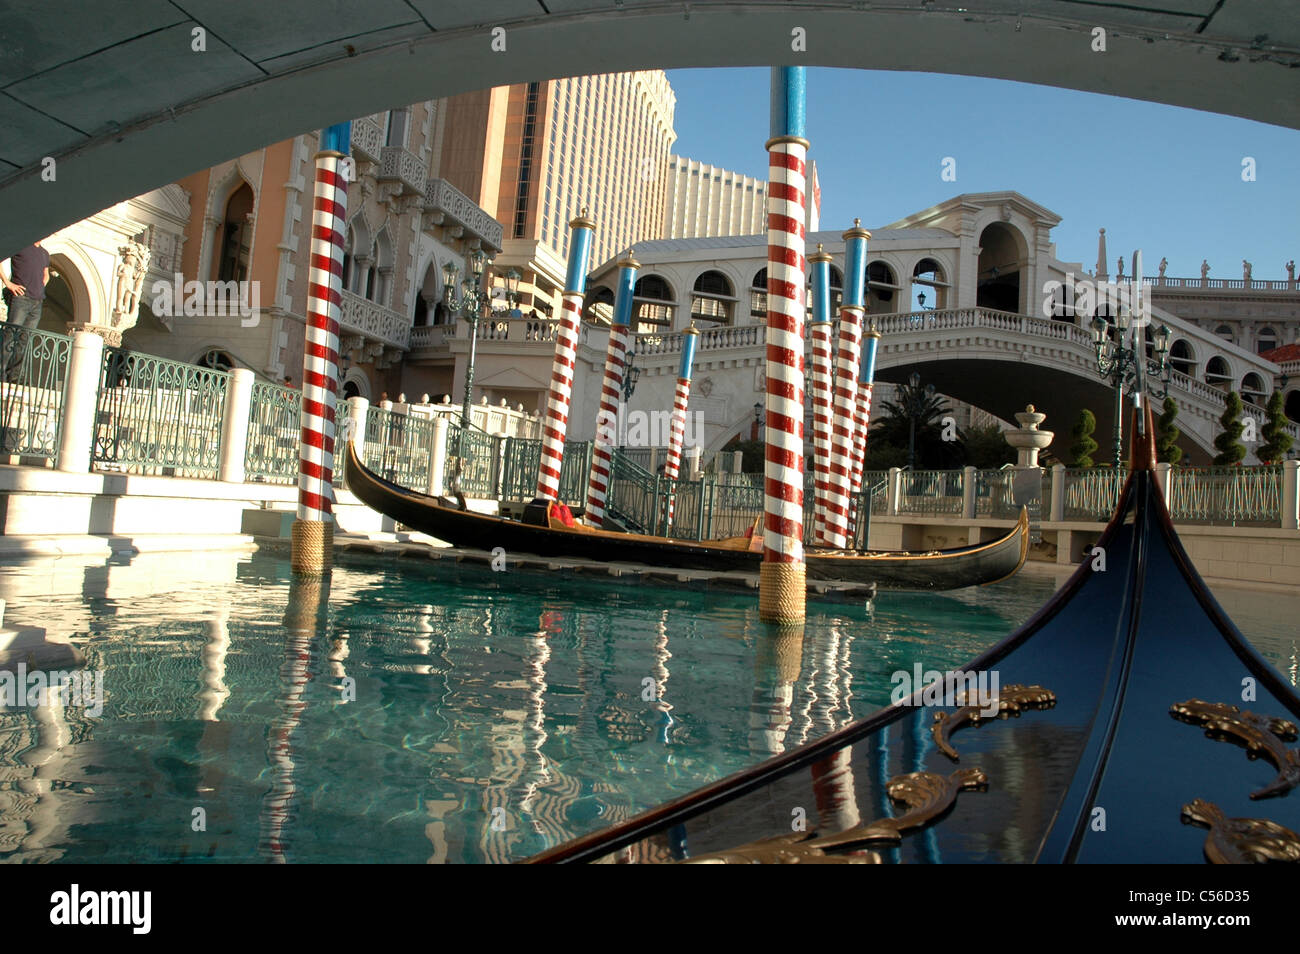 Les visiteurs de l'hôtel vénitien sur le Strip de Las Vegas est visible sur leur réplique du Pont du Rialto. Banque D'Images